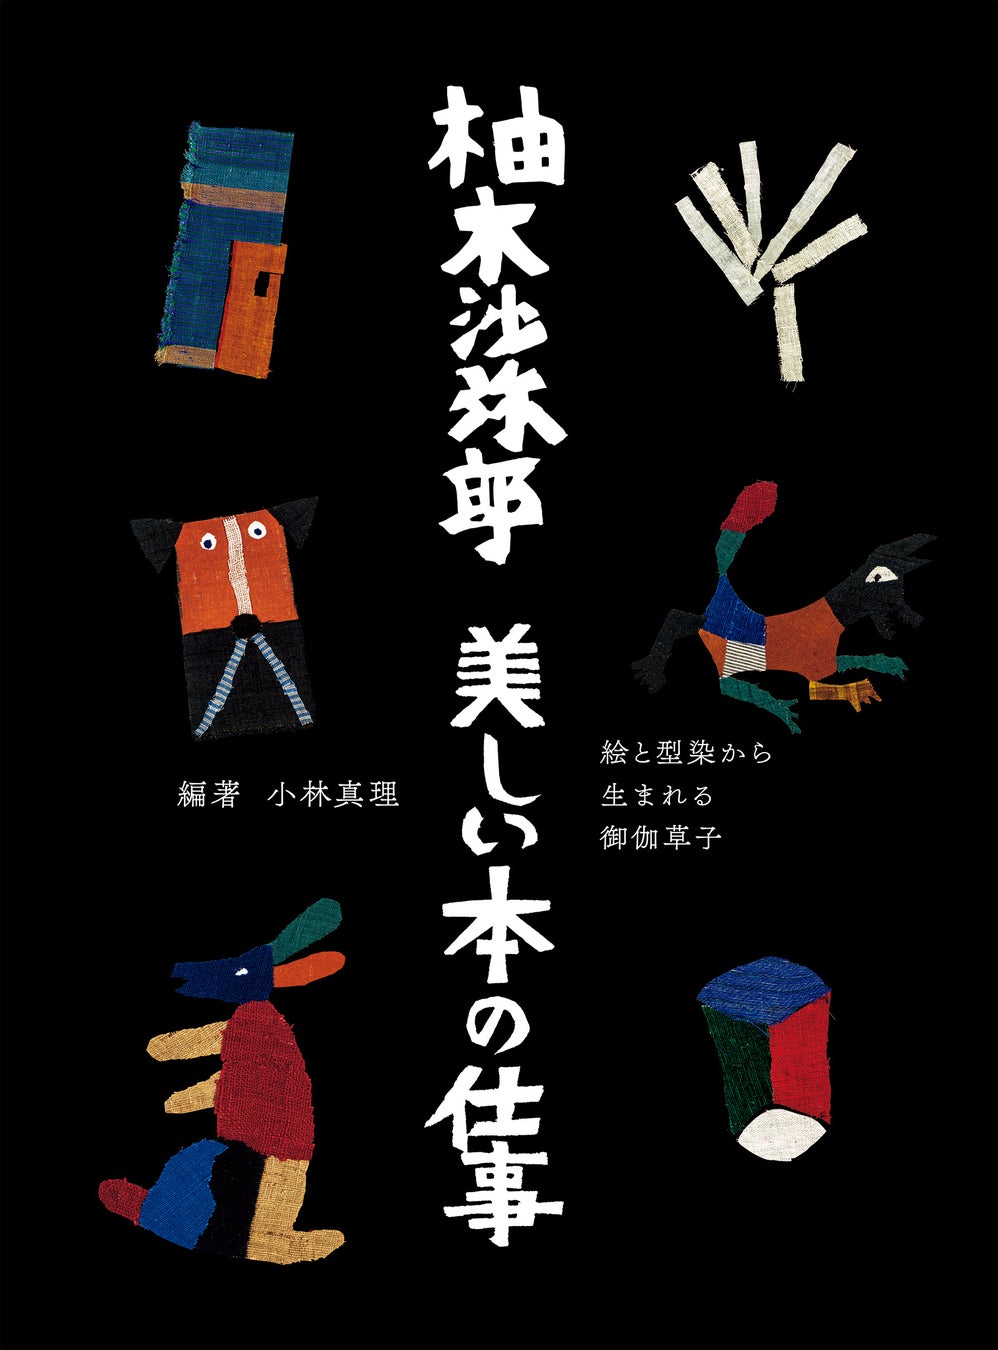 人々に感動と喜びを与えてくれる、柚木沙弥郎の本の世界『柚木沙弥郎　美しい本の仕事』2月22日発売